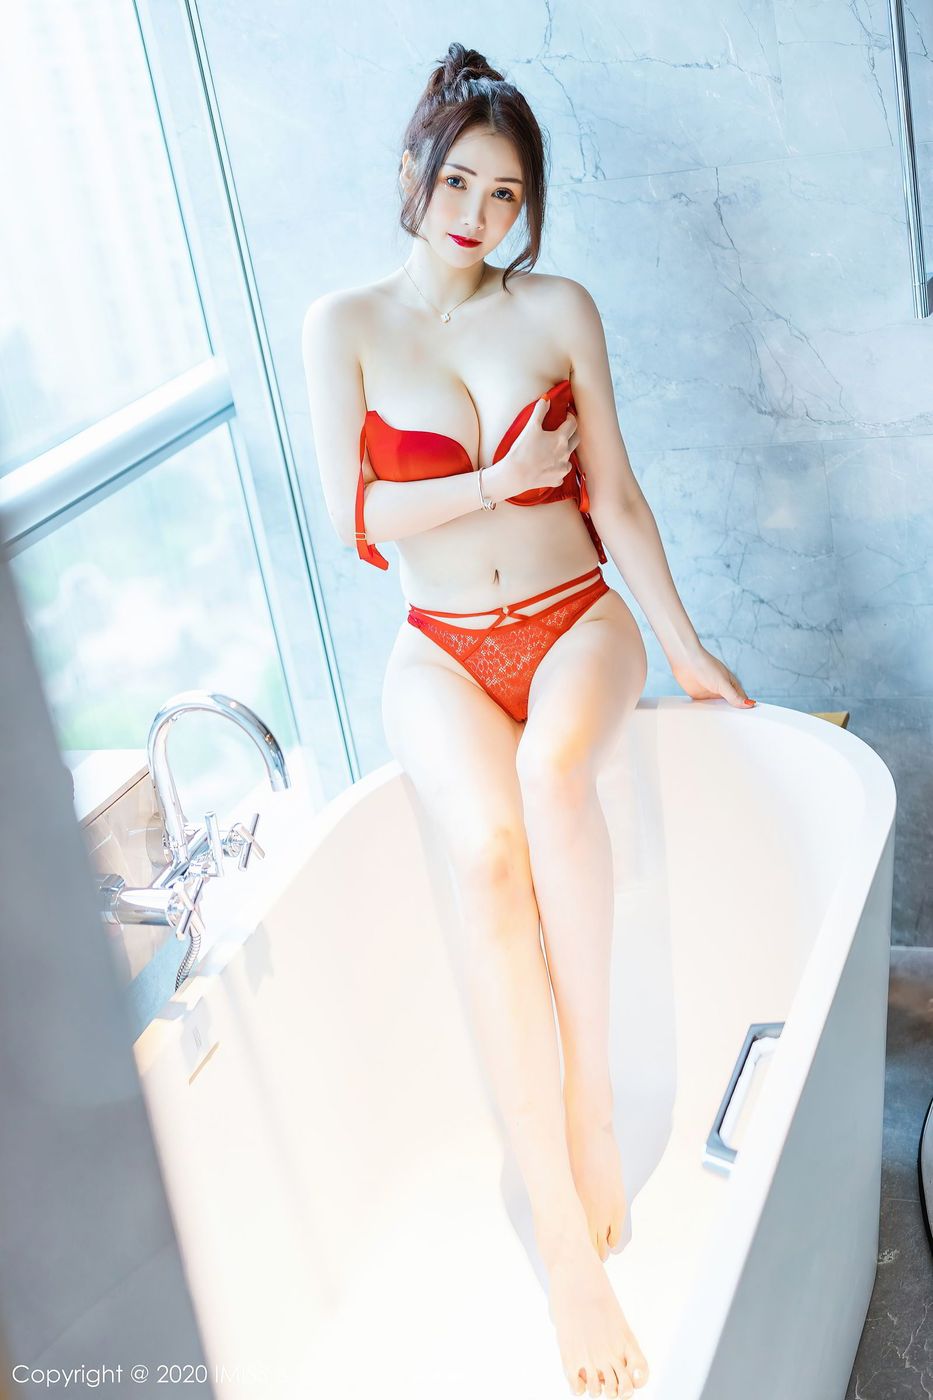 美女模特Evon陈赞之丰满身材熟女气息人间胸器套图